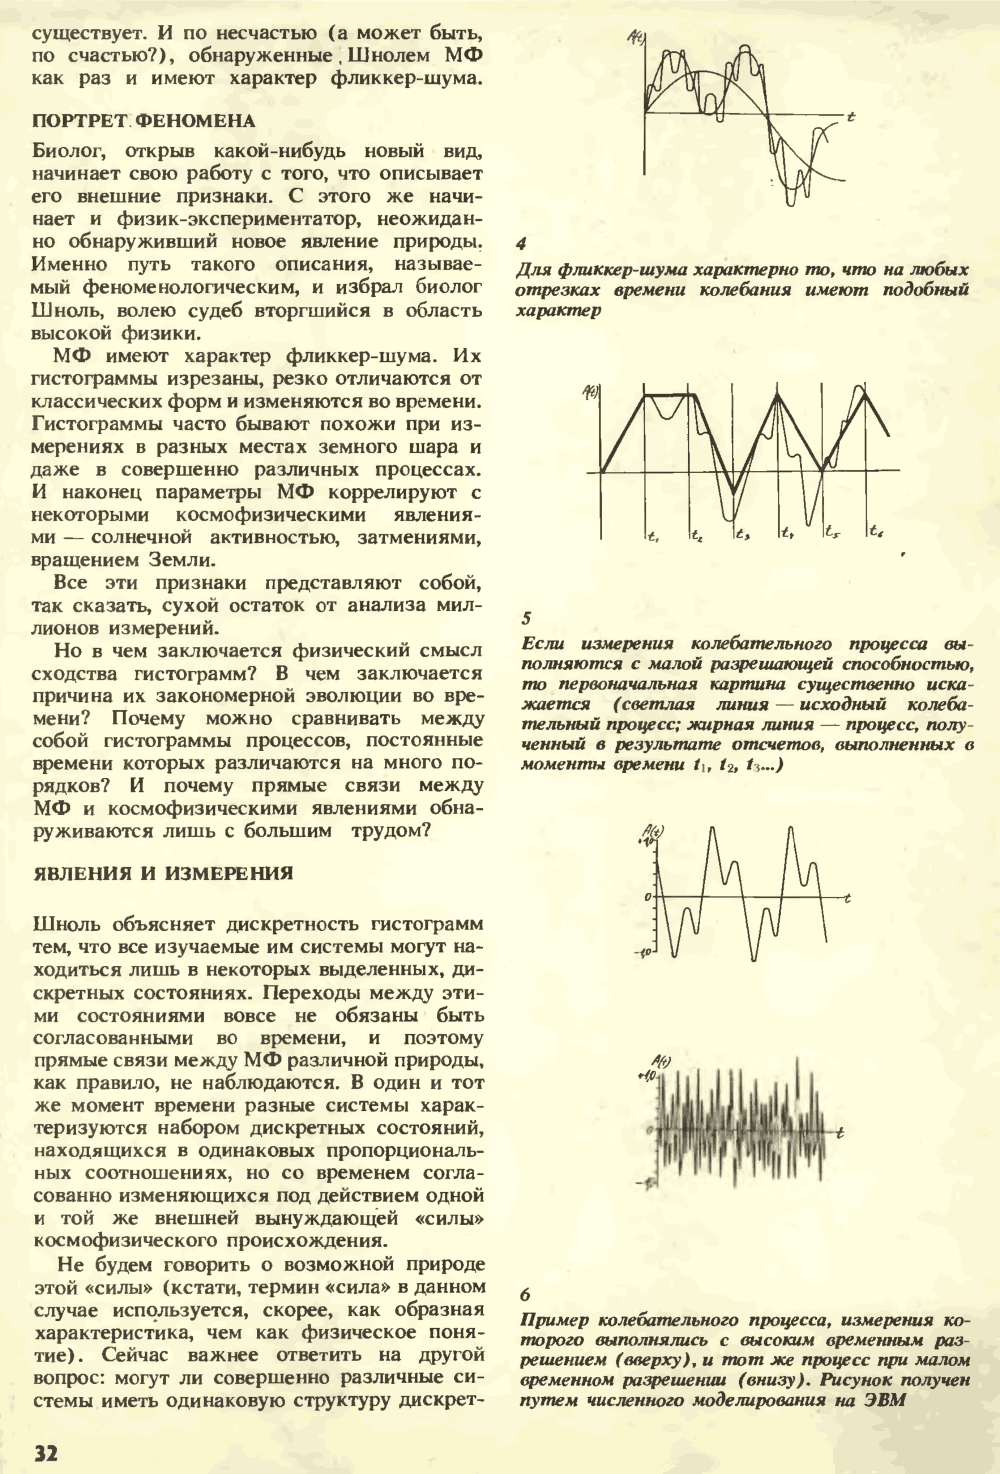 Изменчивая музыка Вселенной. В.Е. Жвирблис. Химия и жизнь, 1991, №3, с.30-34. Фотокопия №3